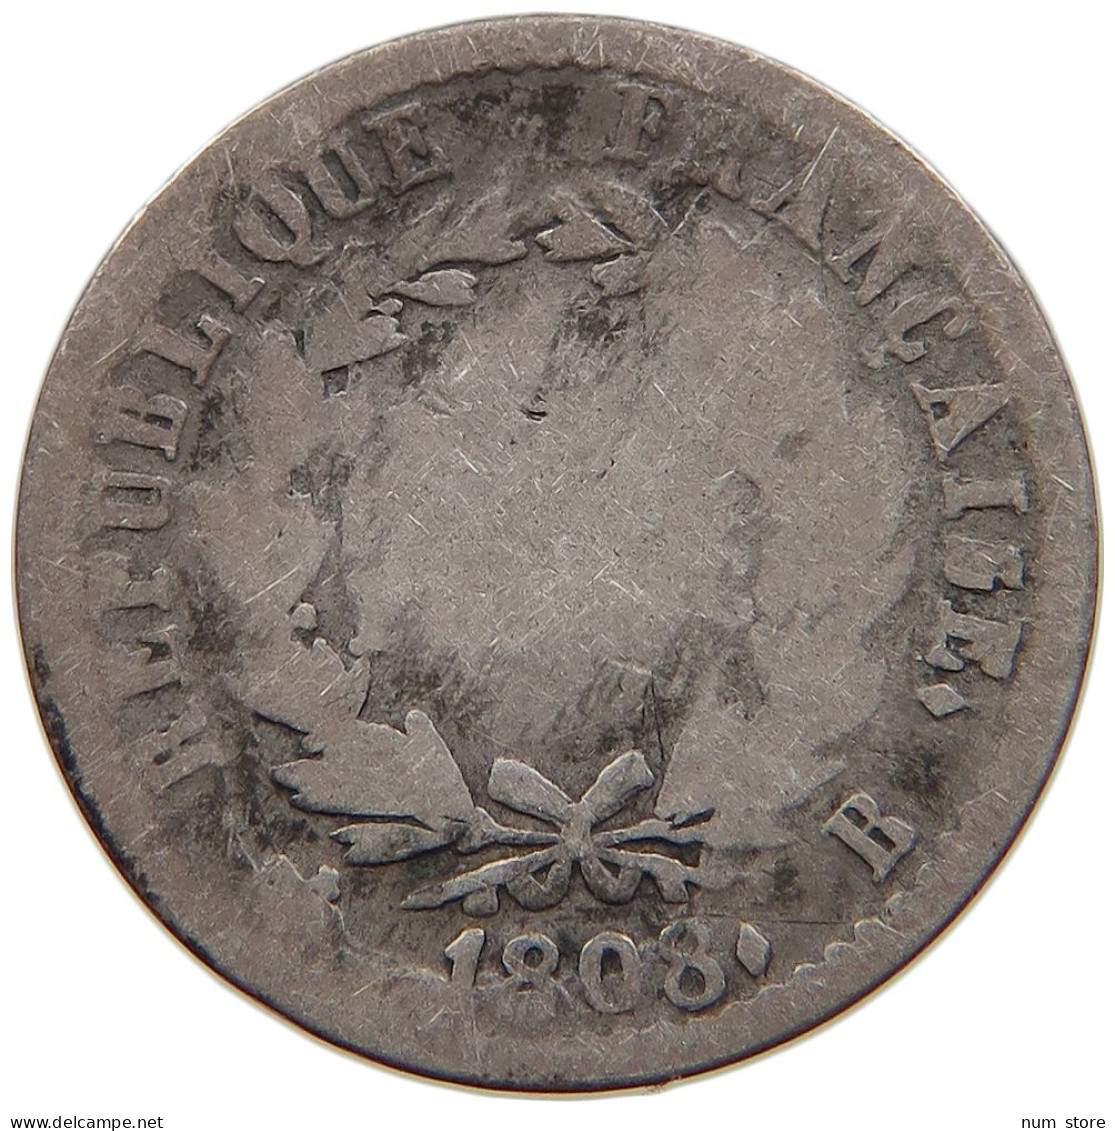 FRANCE 1/2 FRANC 1808 B Napoleon I. 1804-1814, 1815 #s106 0263 - 1/2 Franc